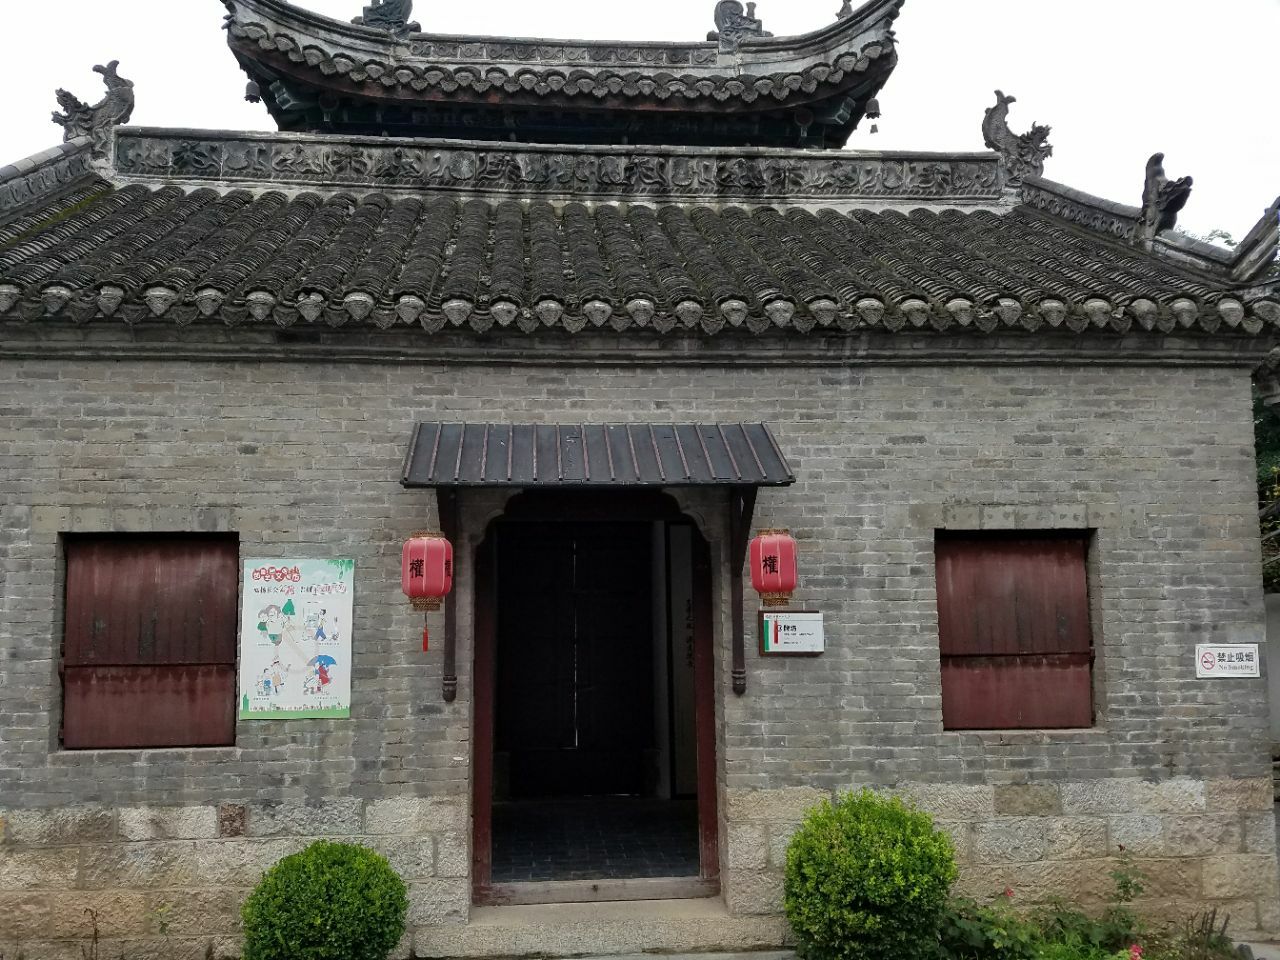 徐州民俗博物馆其实是位于户部山古建筑群的余家大院